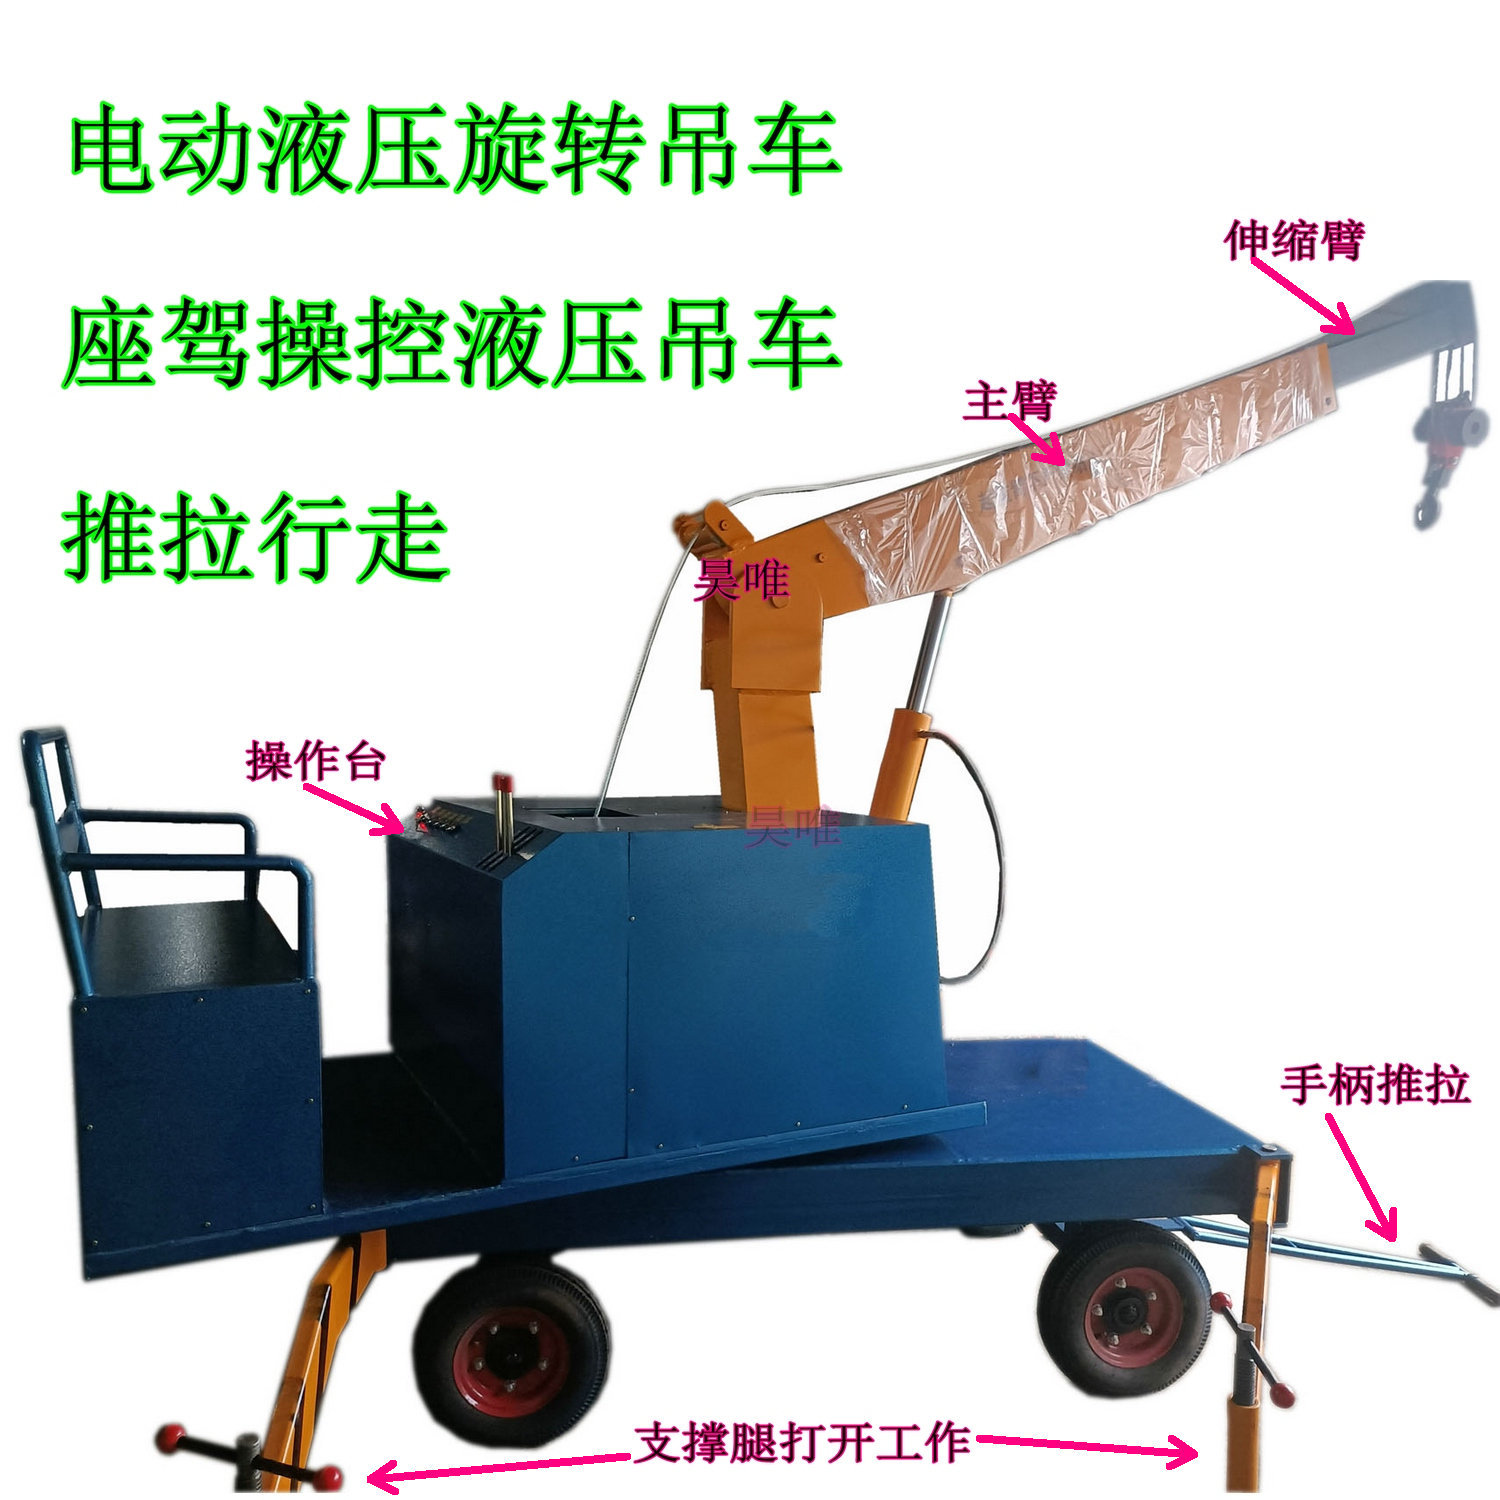 Hydraulic pressure Counterweight crane 380v Electric crane Push pull walk Hydraulic pressure Lifting rotate cantilever crane Crane